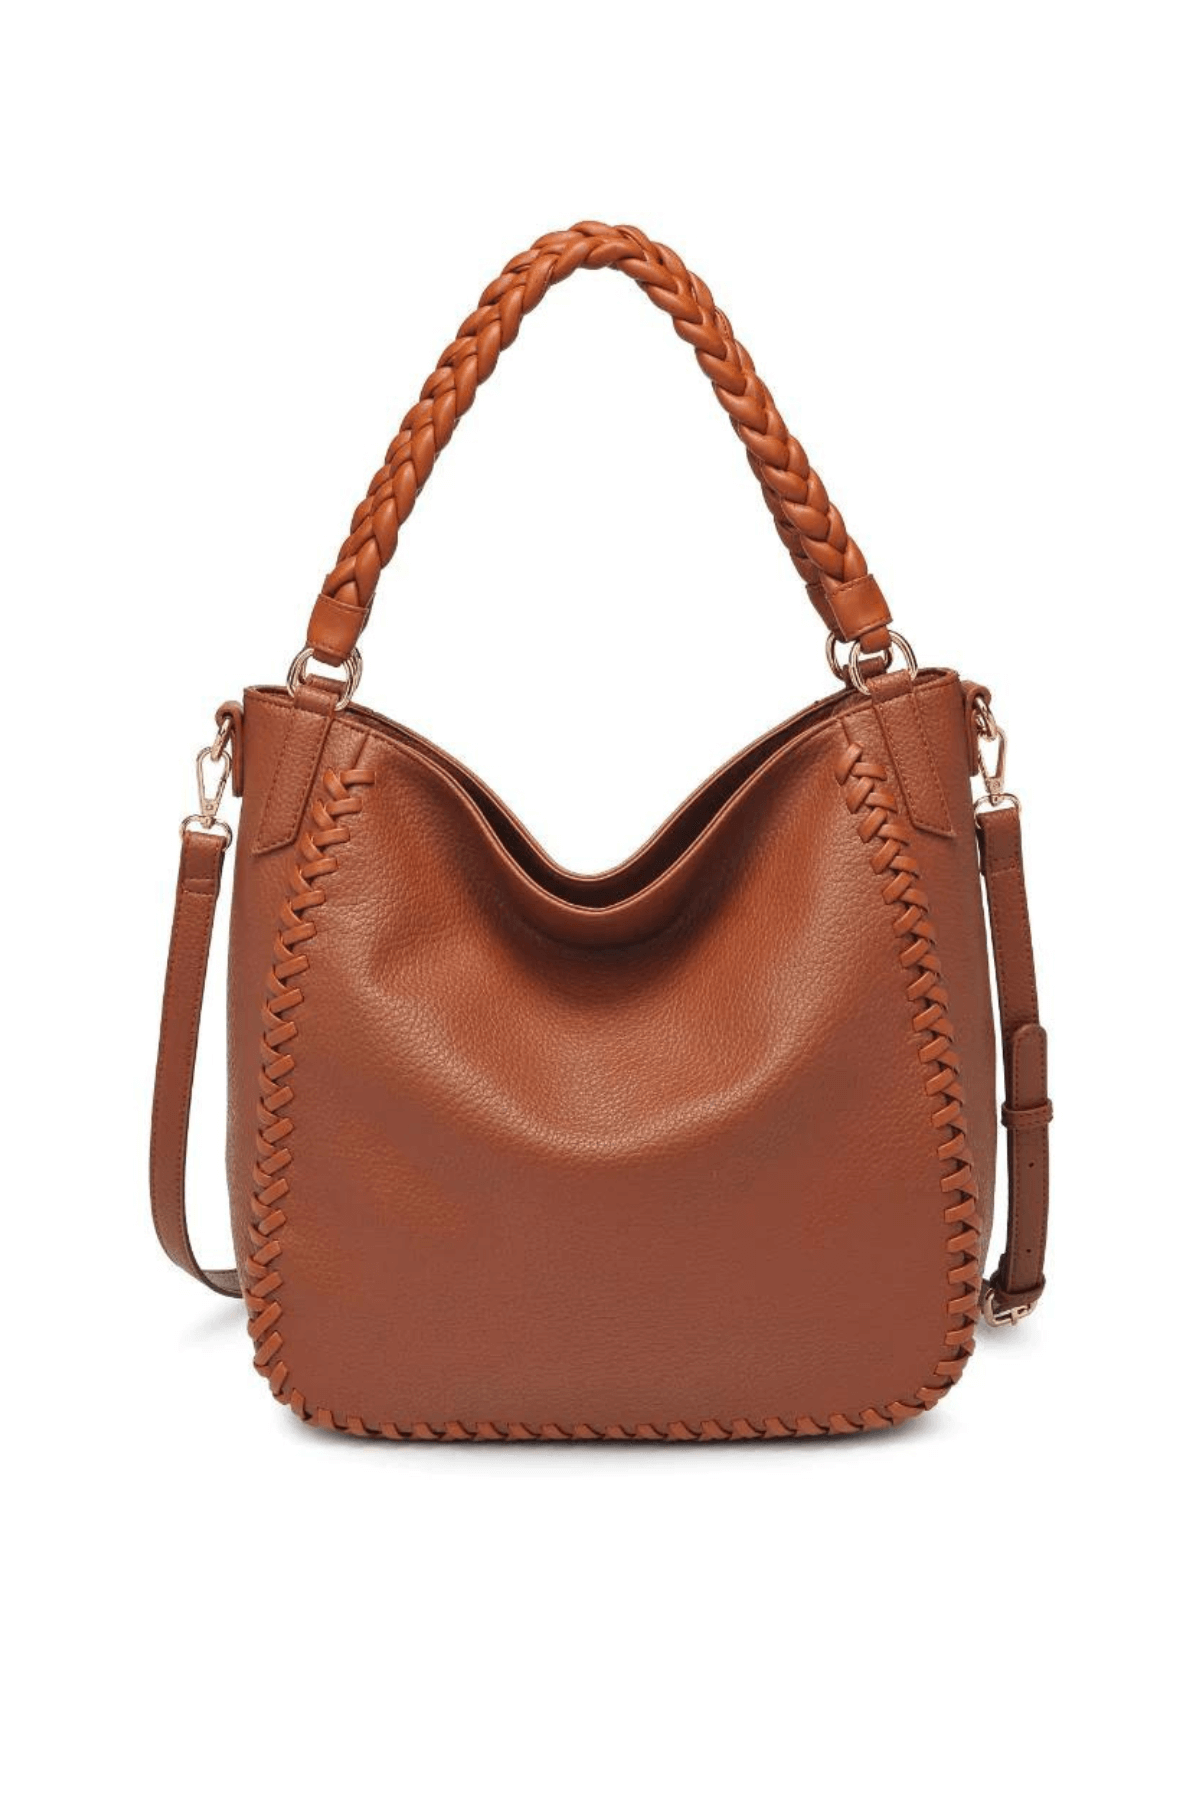 Bags & Purses | 'Moda Siciliana' Real Leather Tote Crossbody Bag | Ashwood  Leather